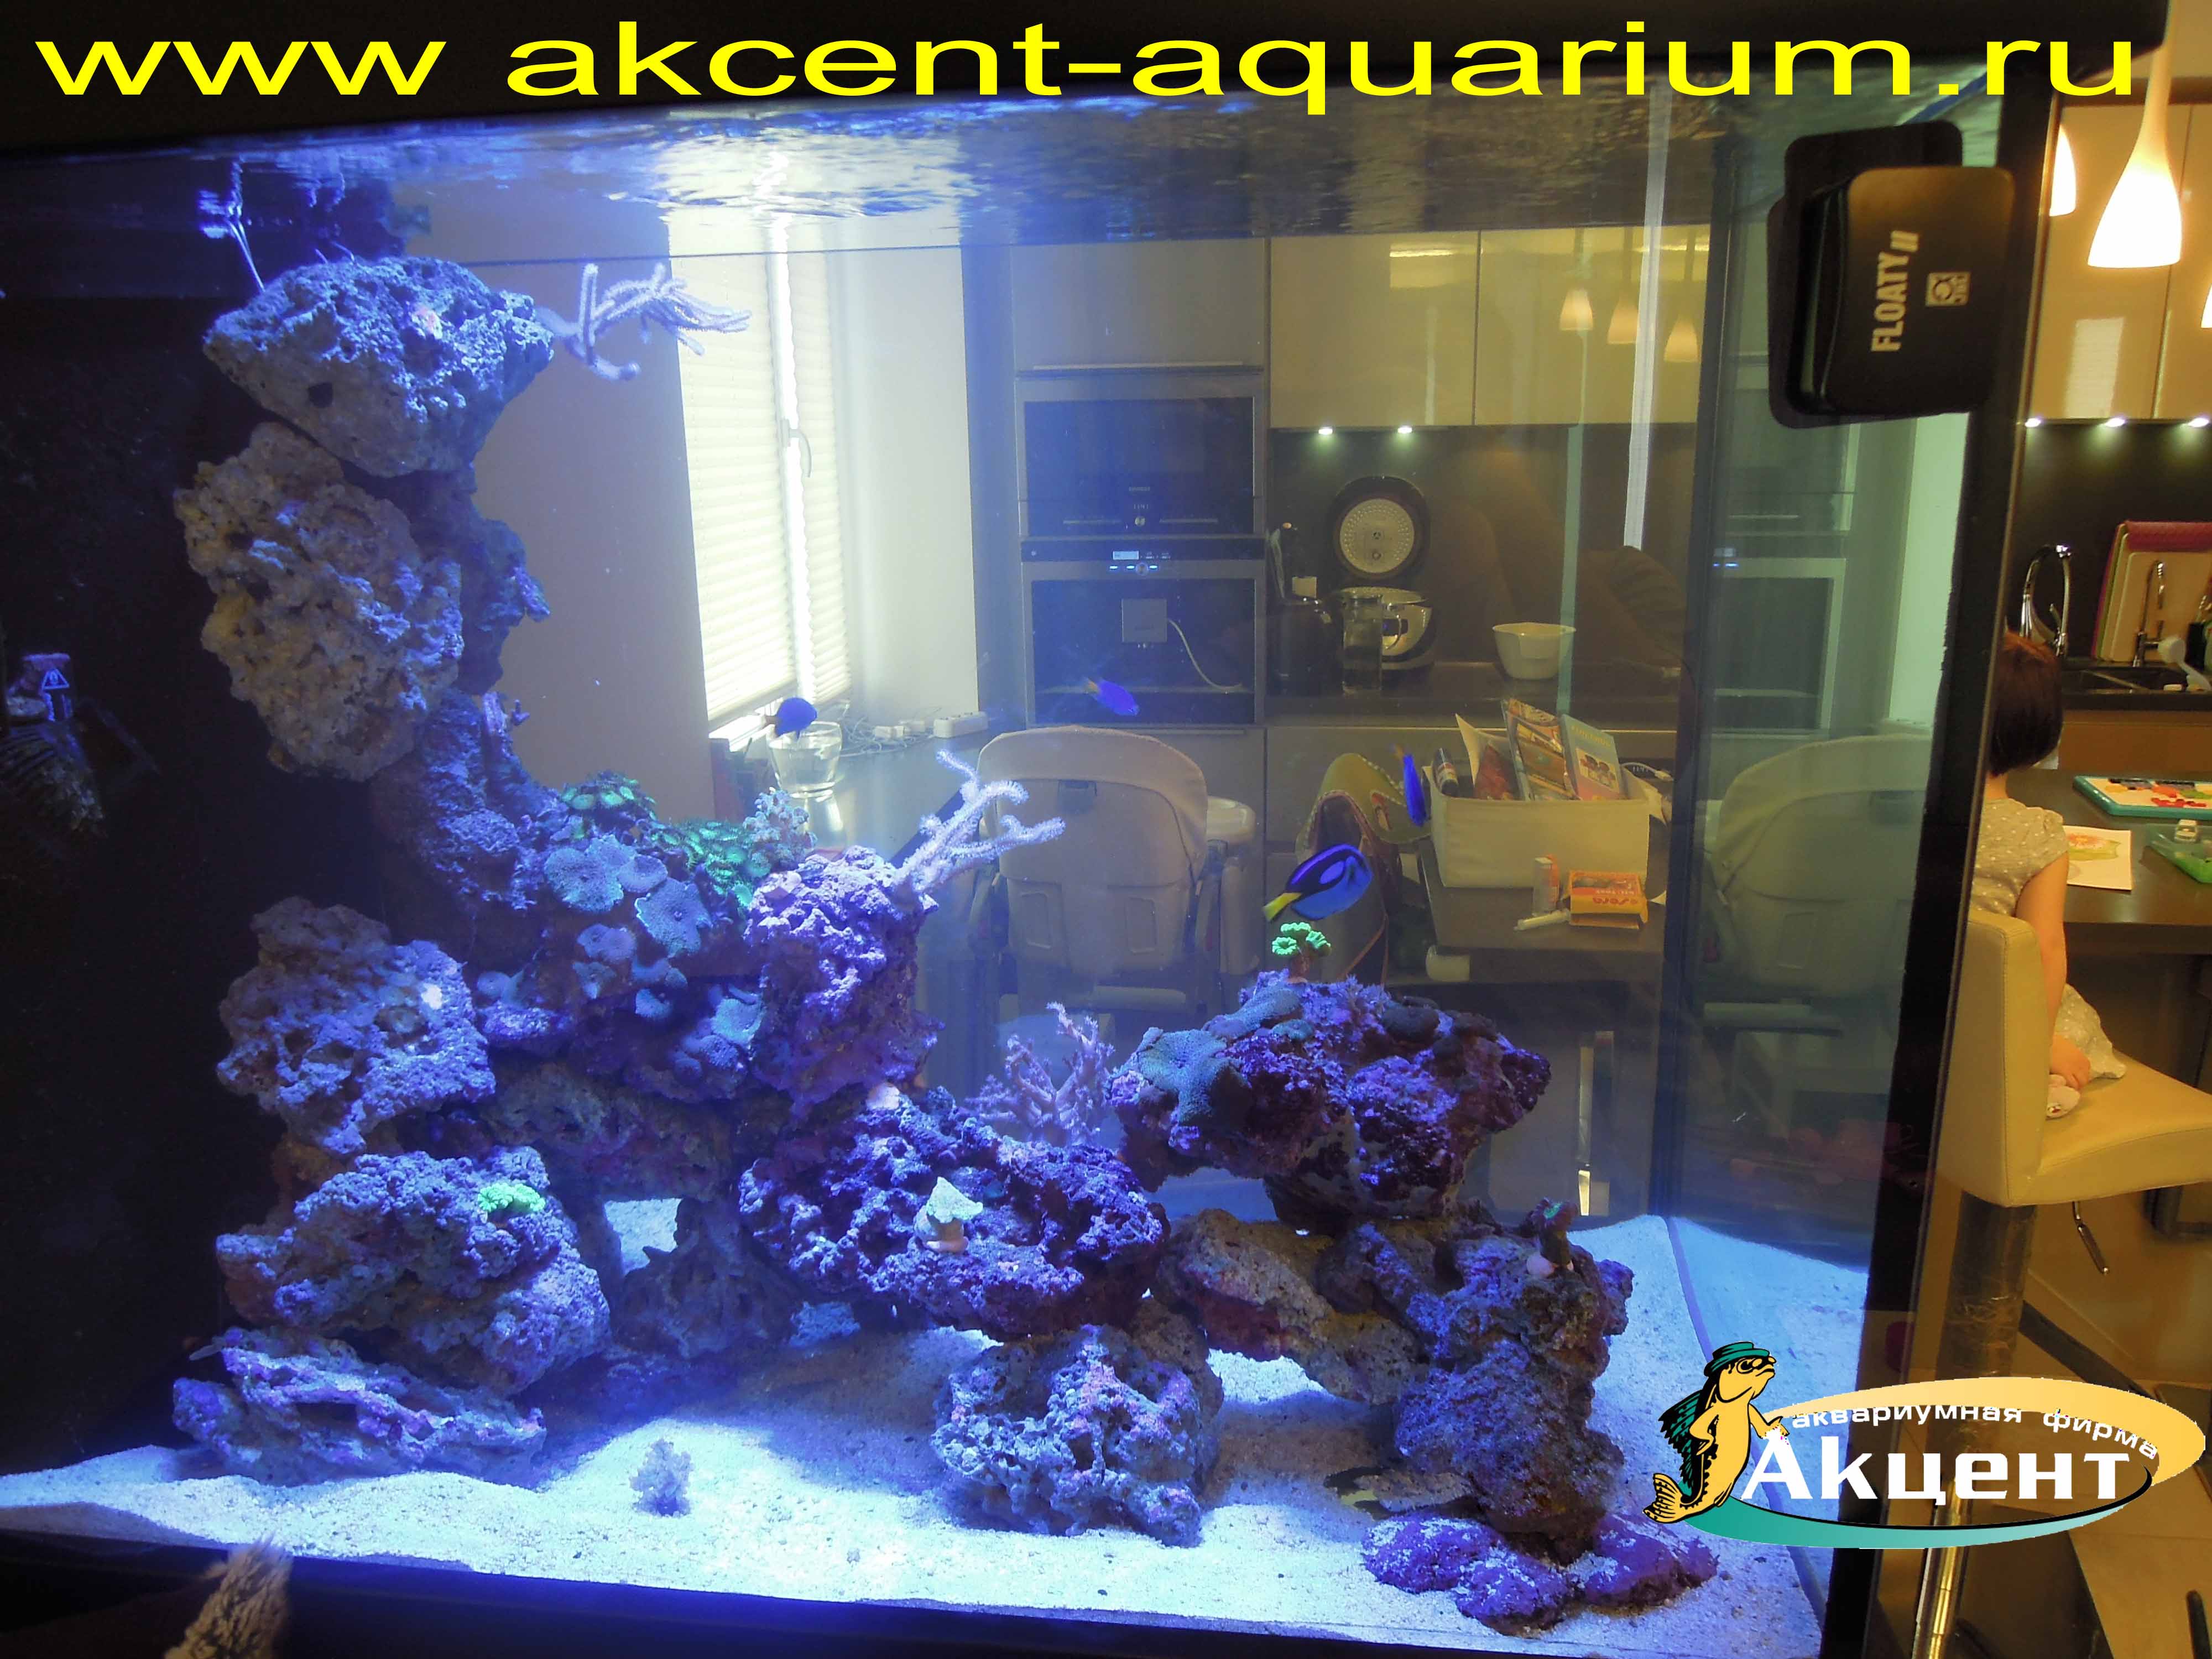 Акцент-аквариум,просмотровый морской аквариум 500 литров, вид из комнаты, живые камни, мягкие кораллы, жесткие кораллы